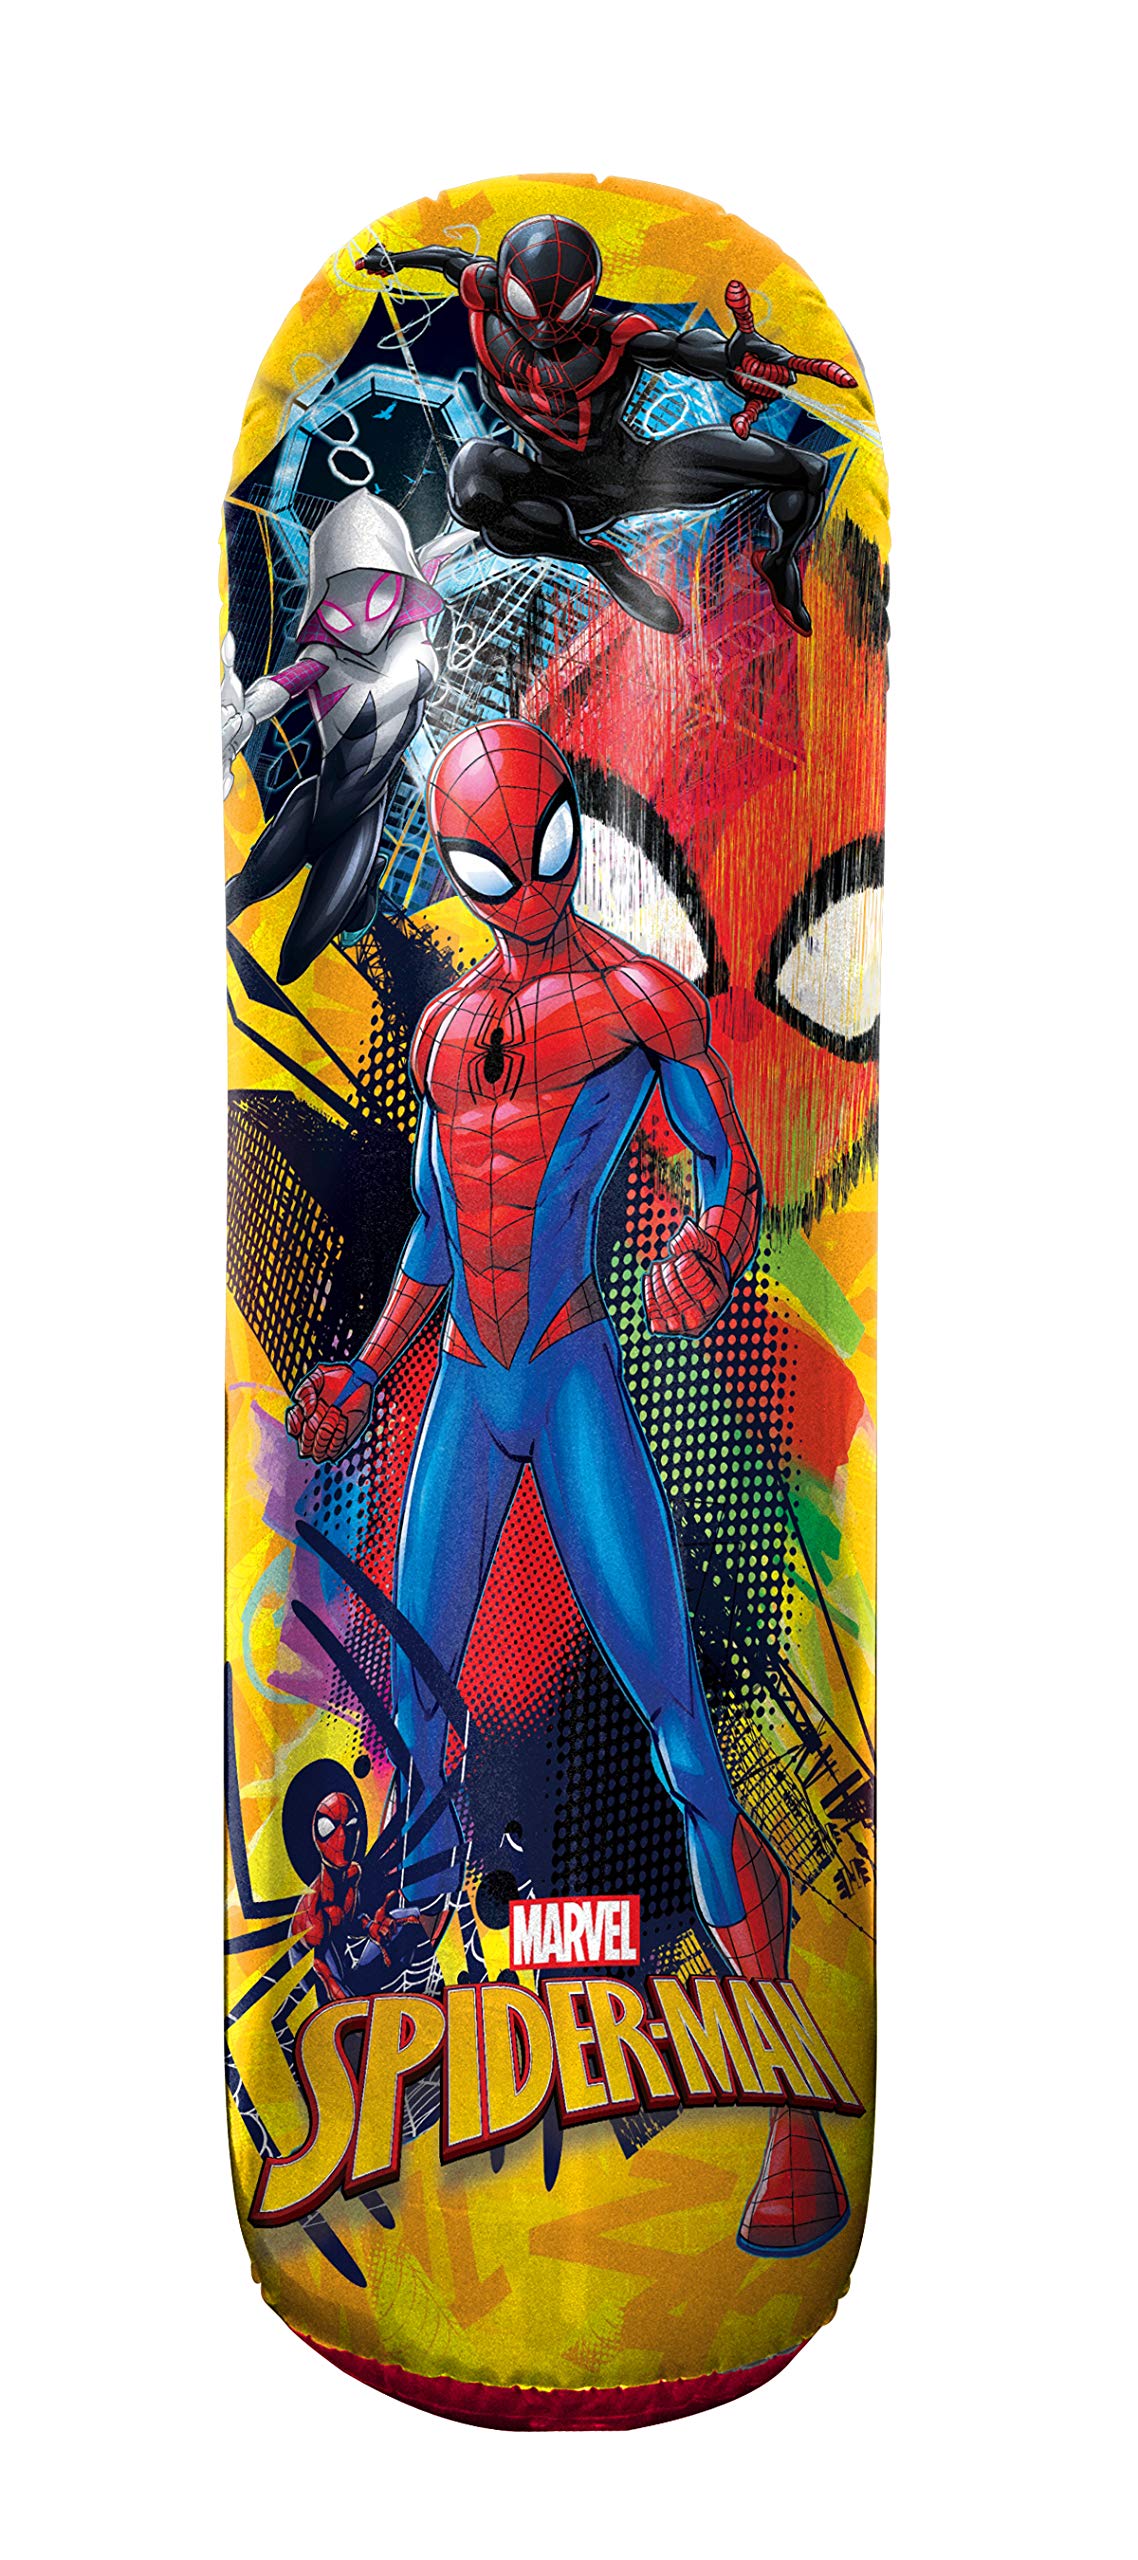 Hedstrom Spiderman Bop Bag Inflatable Punching Bag, 42 Inch $4.95